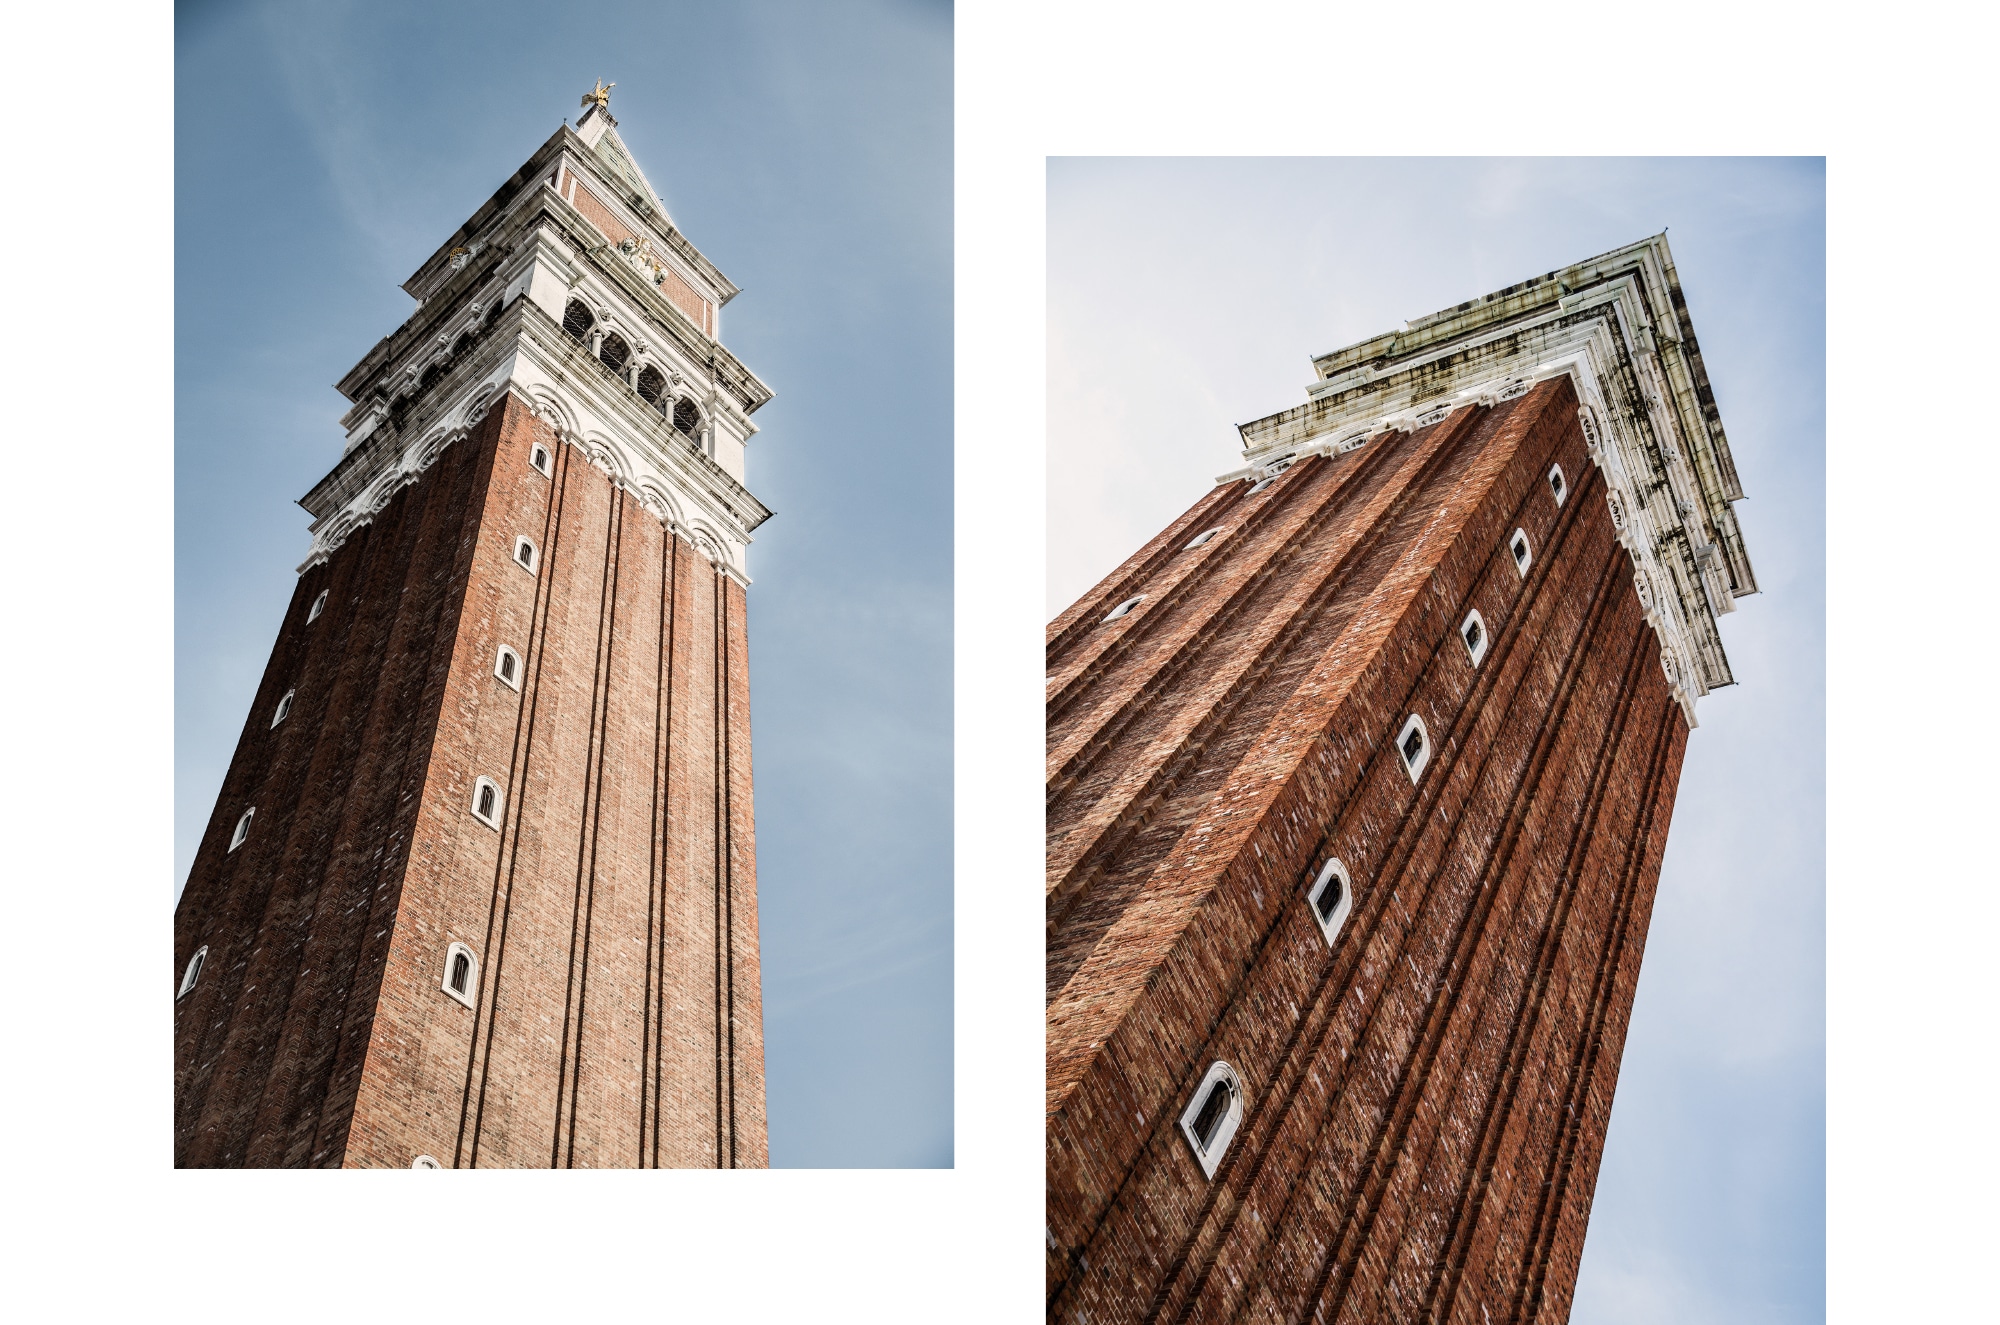 Le campanile de la place saint marc à Venise en Italie